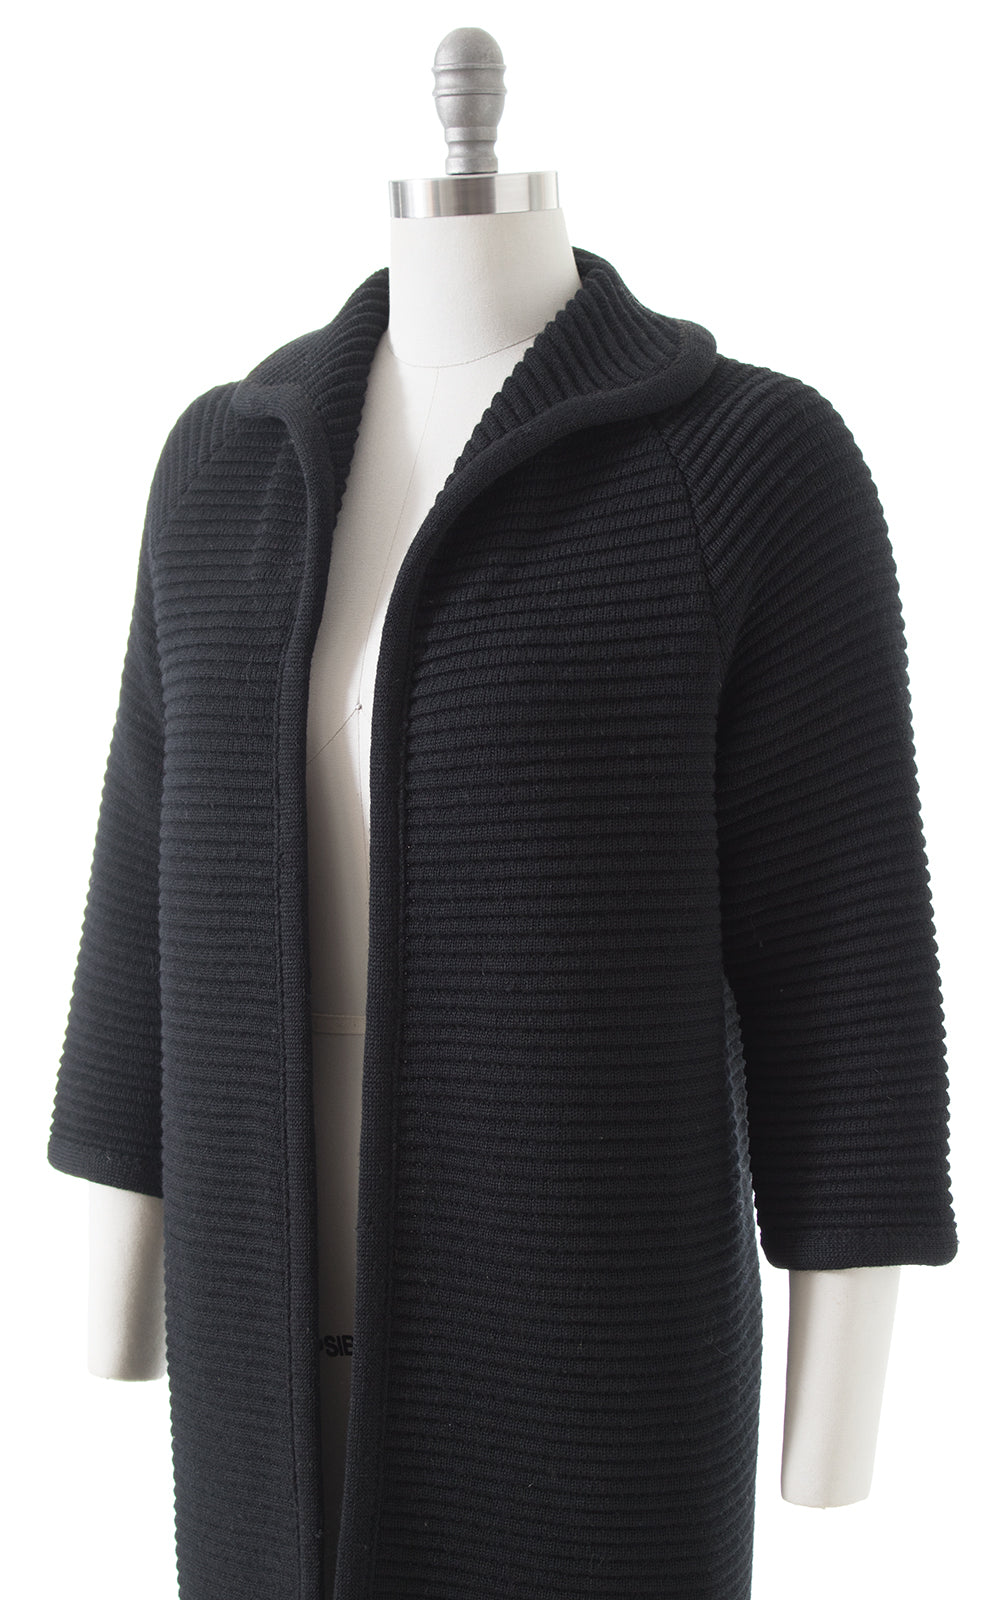 1960s Black Knit Wool Sweater Coat